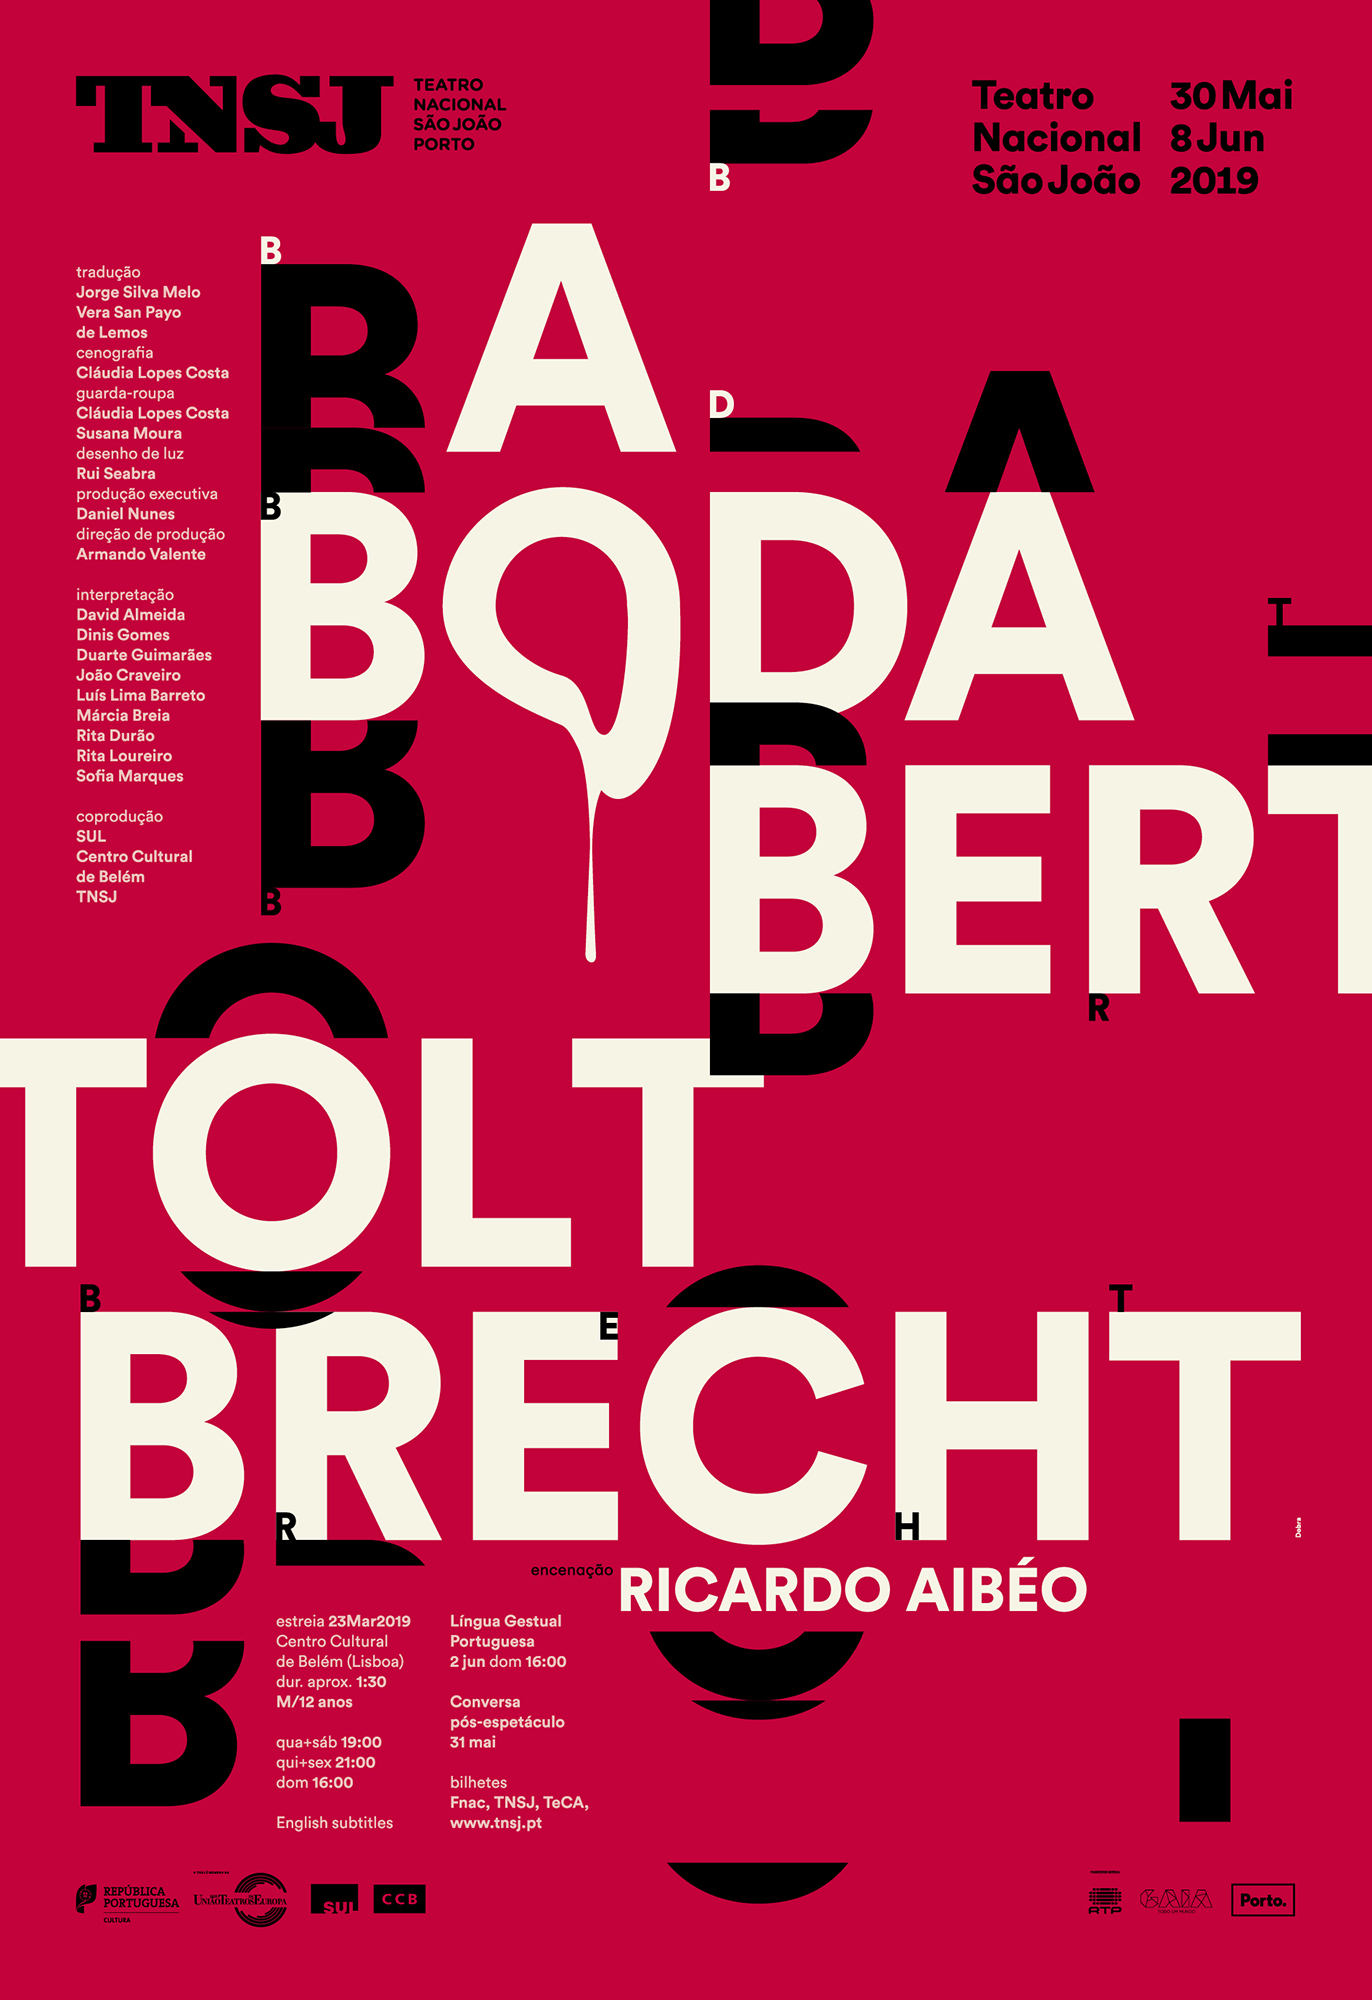 São João National Theatre Posters 2019 Image:1.3